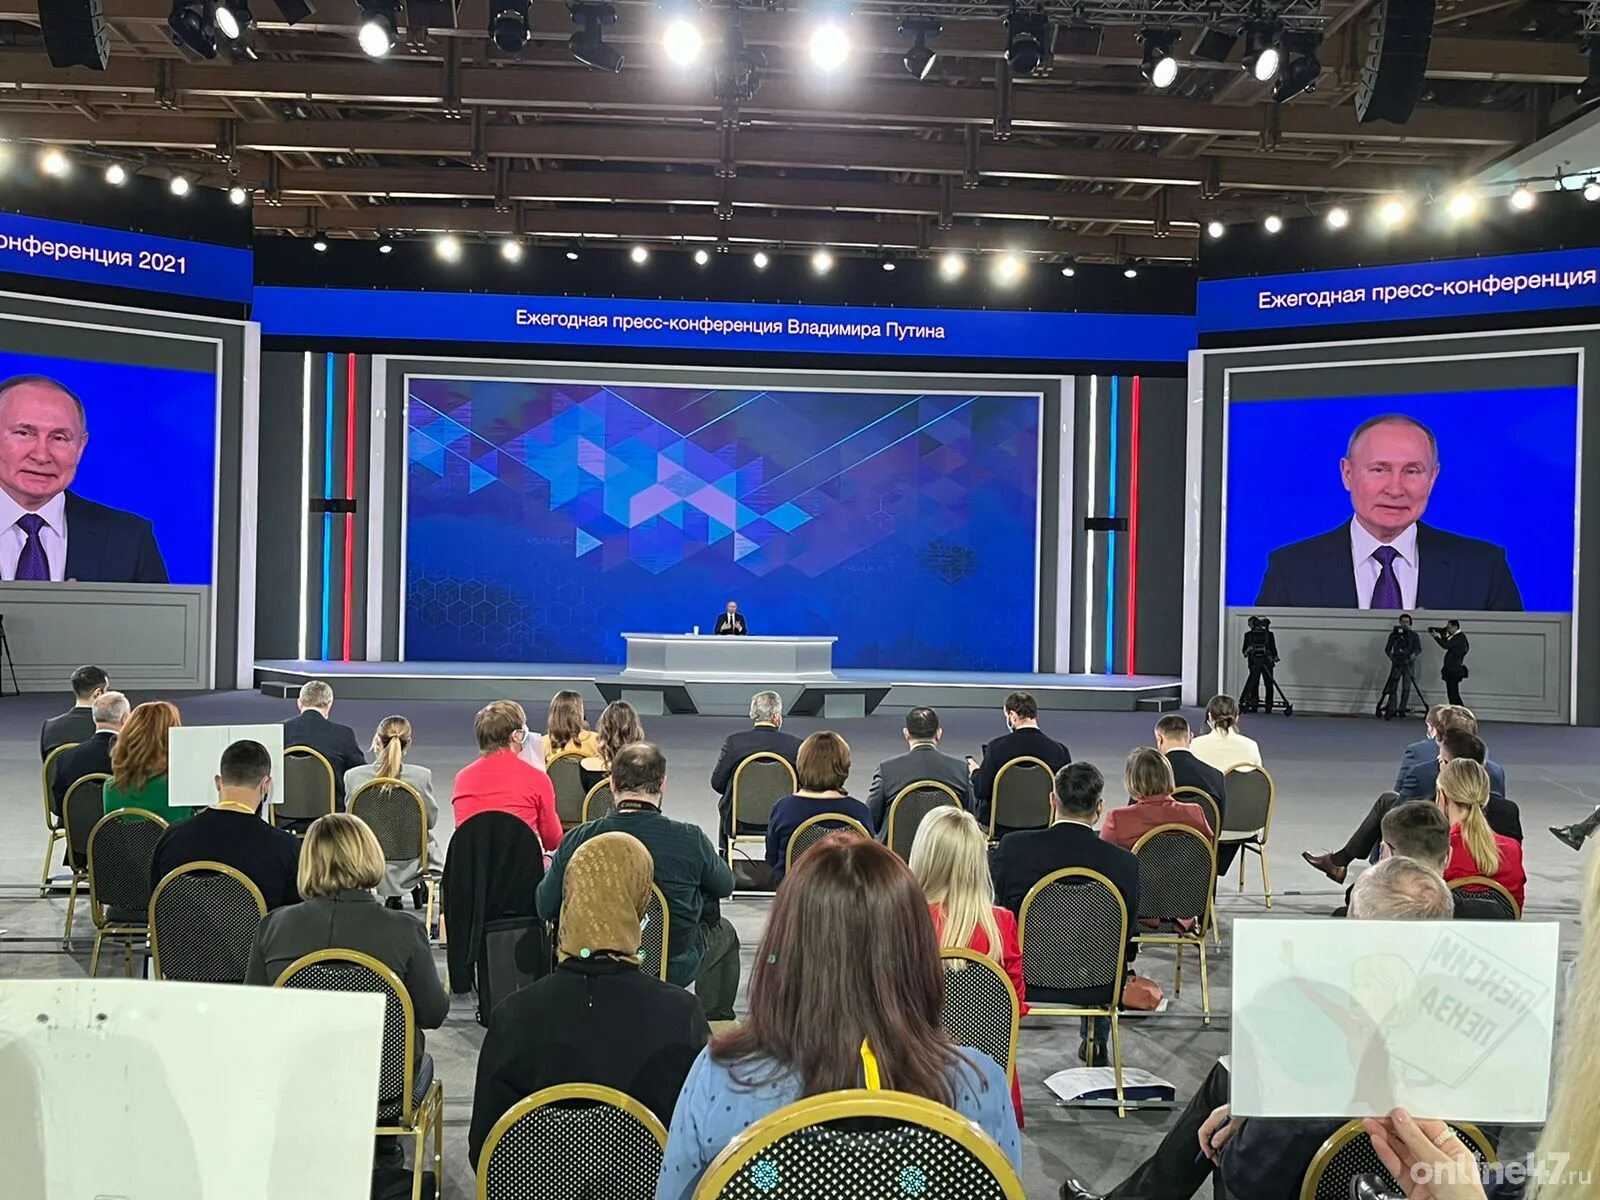 Конференции 2021 россия. Пресс конференция. Пресс конференция Путина. Человек на пресс конференции.